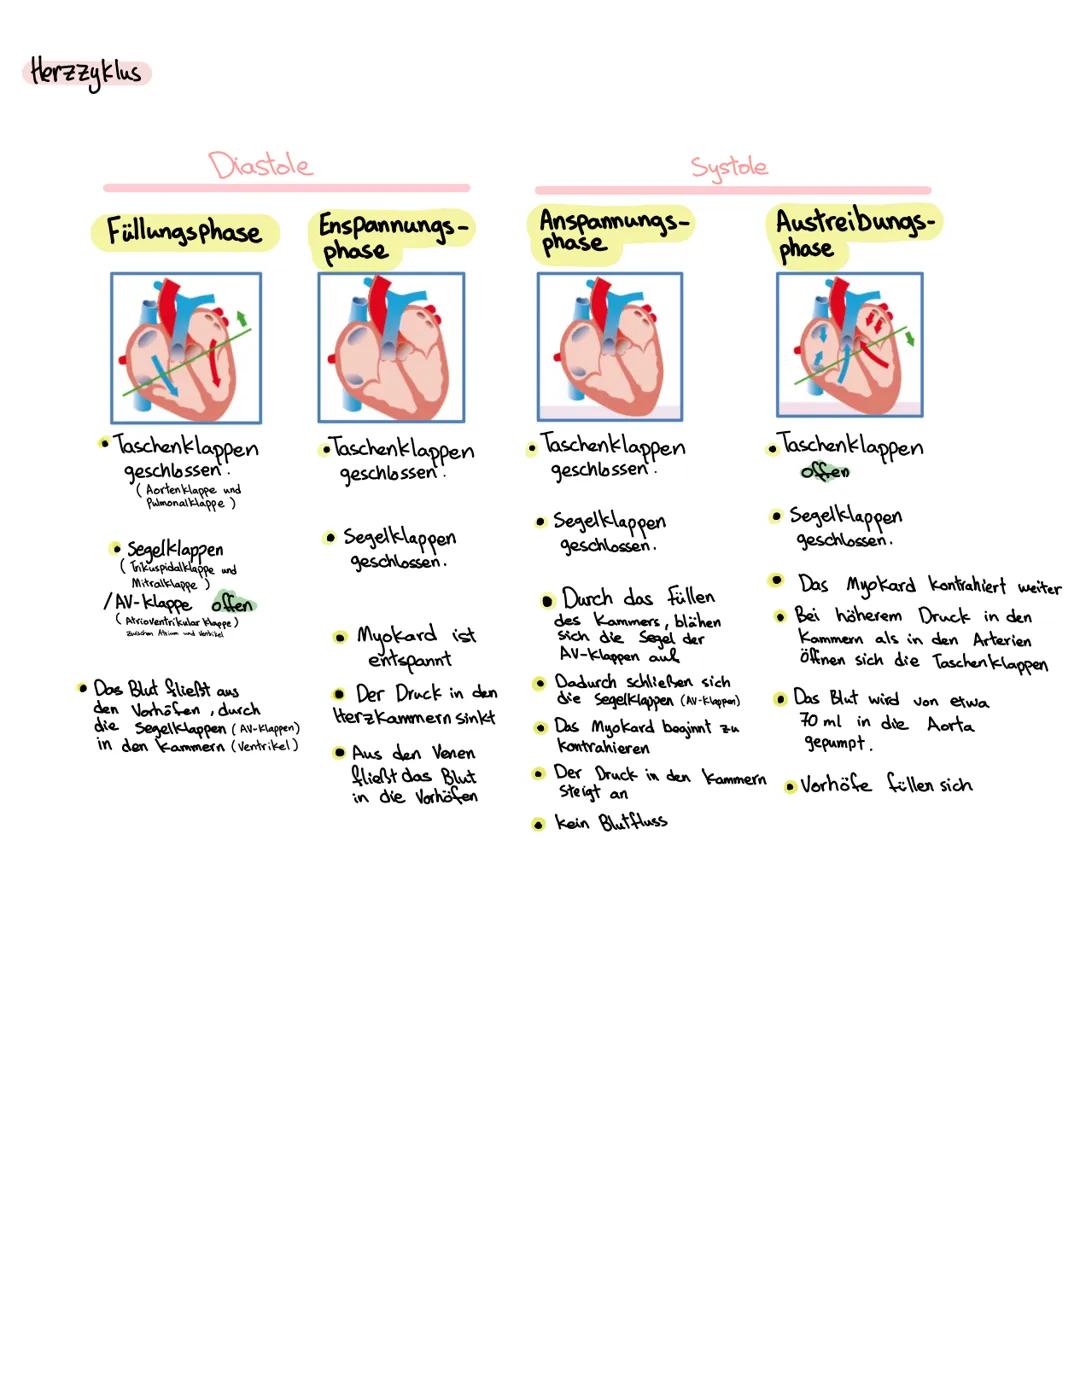 Anatomie Herz
ALLGEMEINES
Das Herz wird in der Medizin auch ,Cor" oder "Kardia" genannt.
Das Herz ist das zentrale Organ des kardiovaskuläre